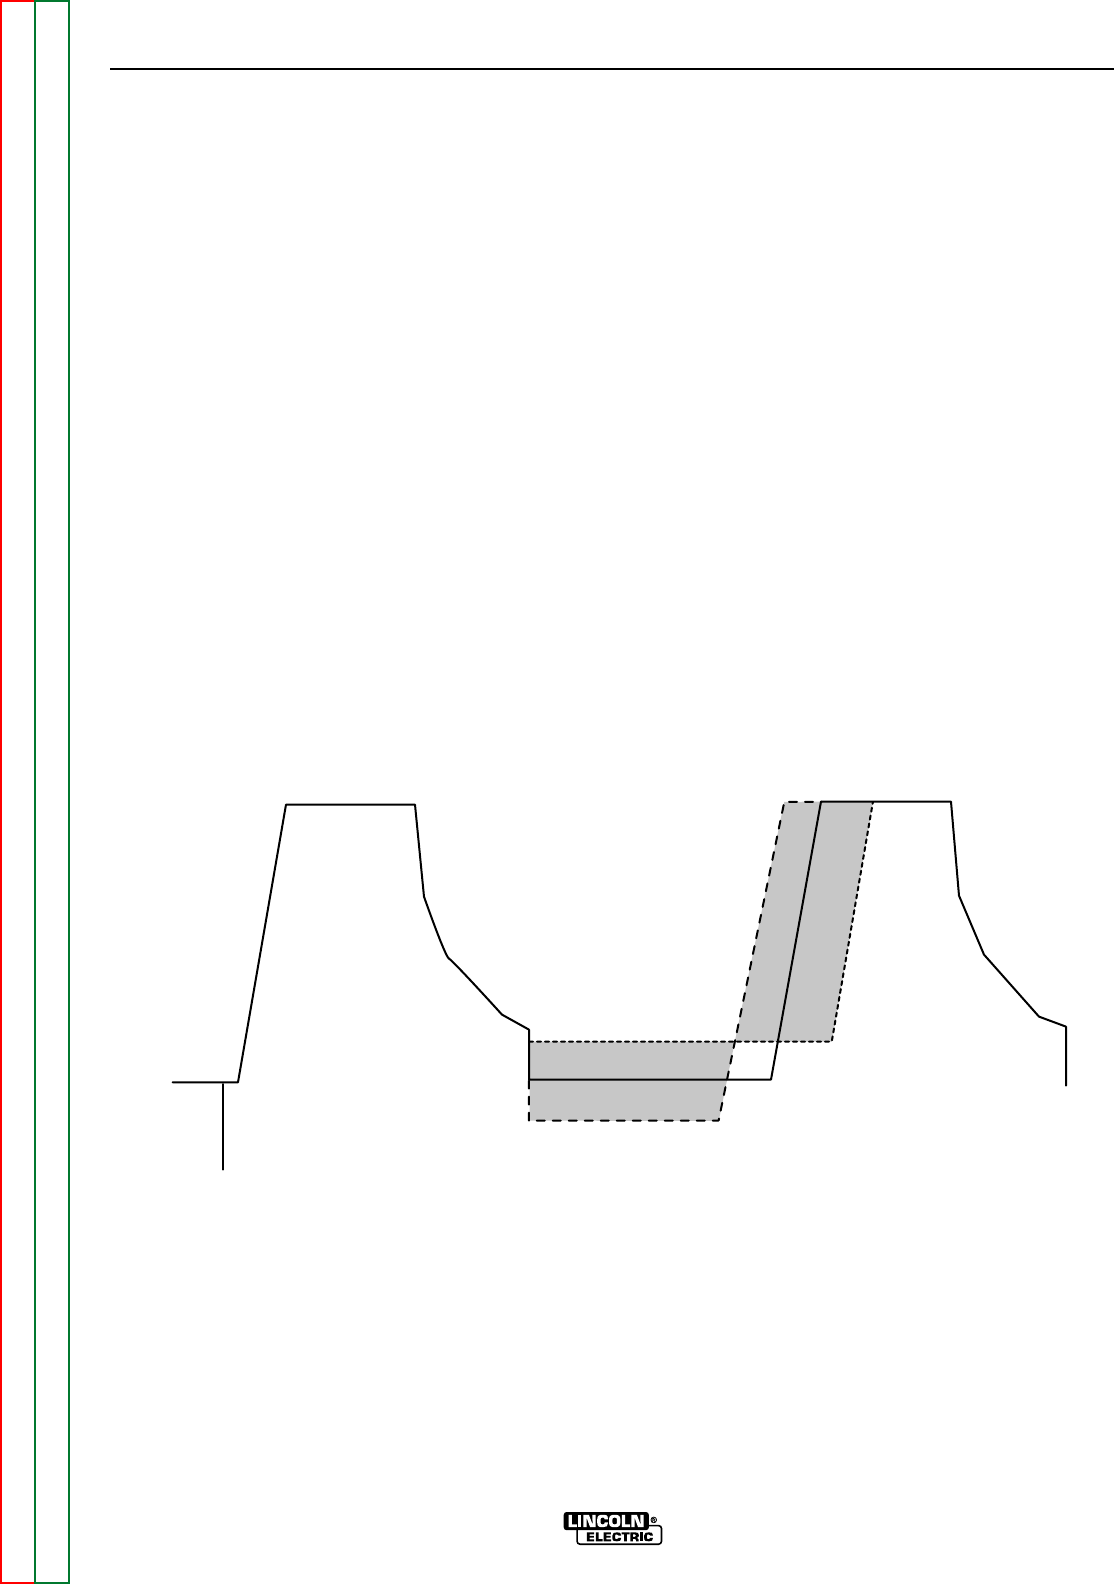 sentinel brake controller wiring diagram